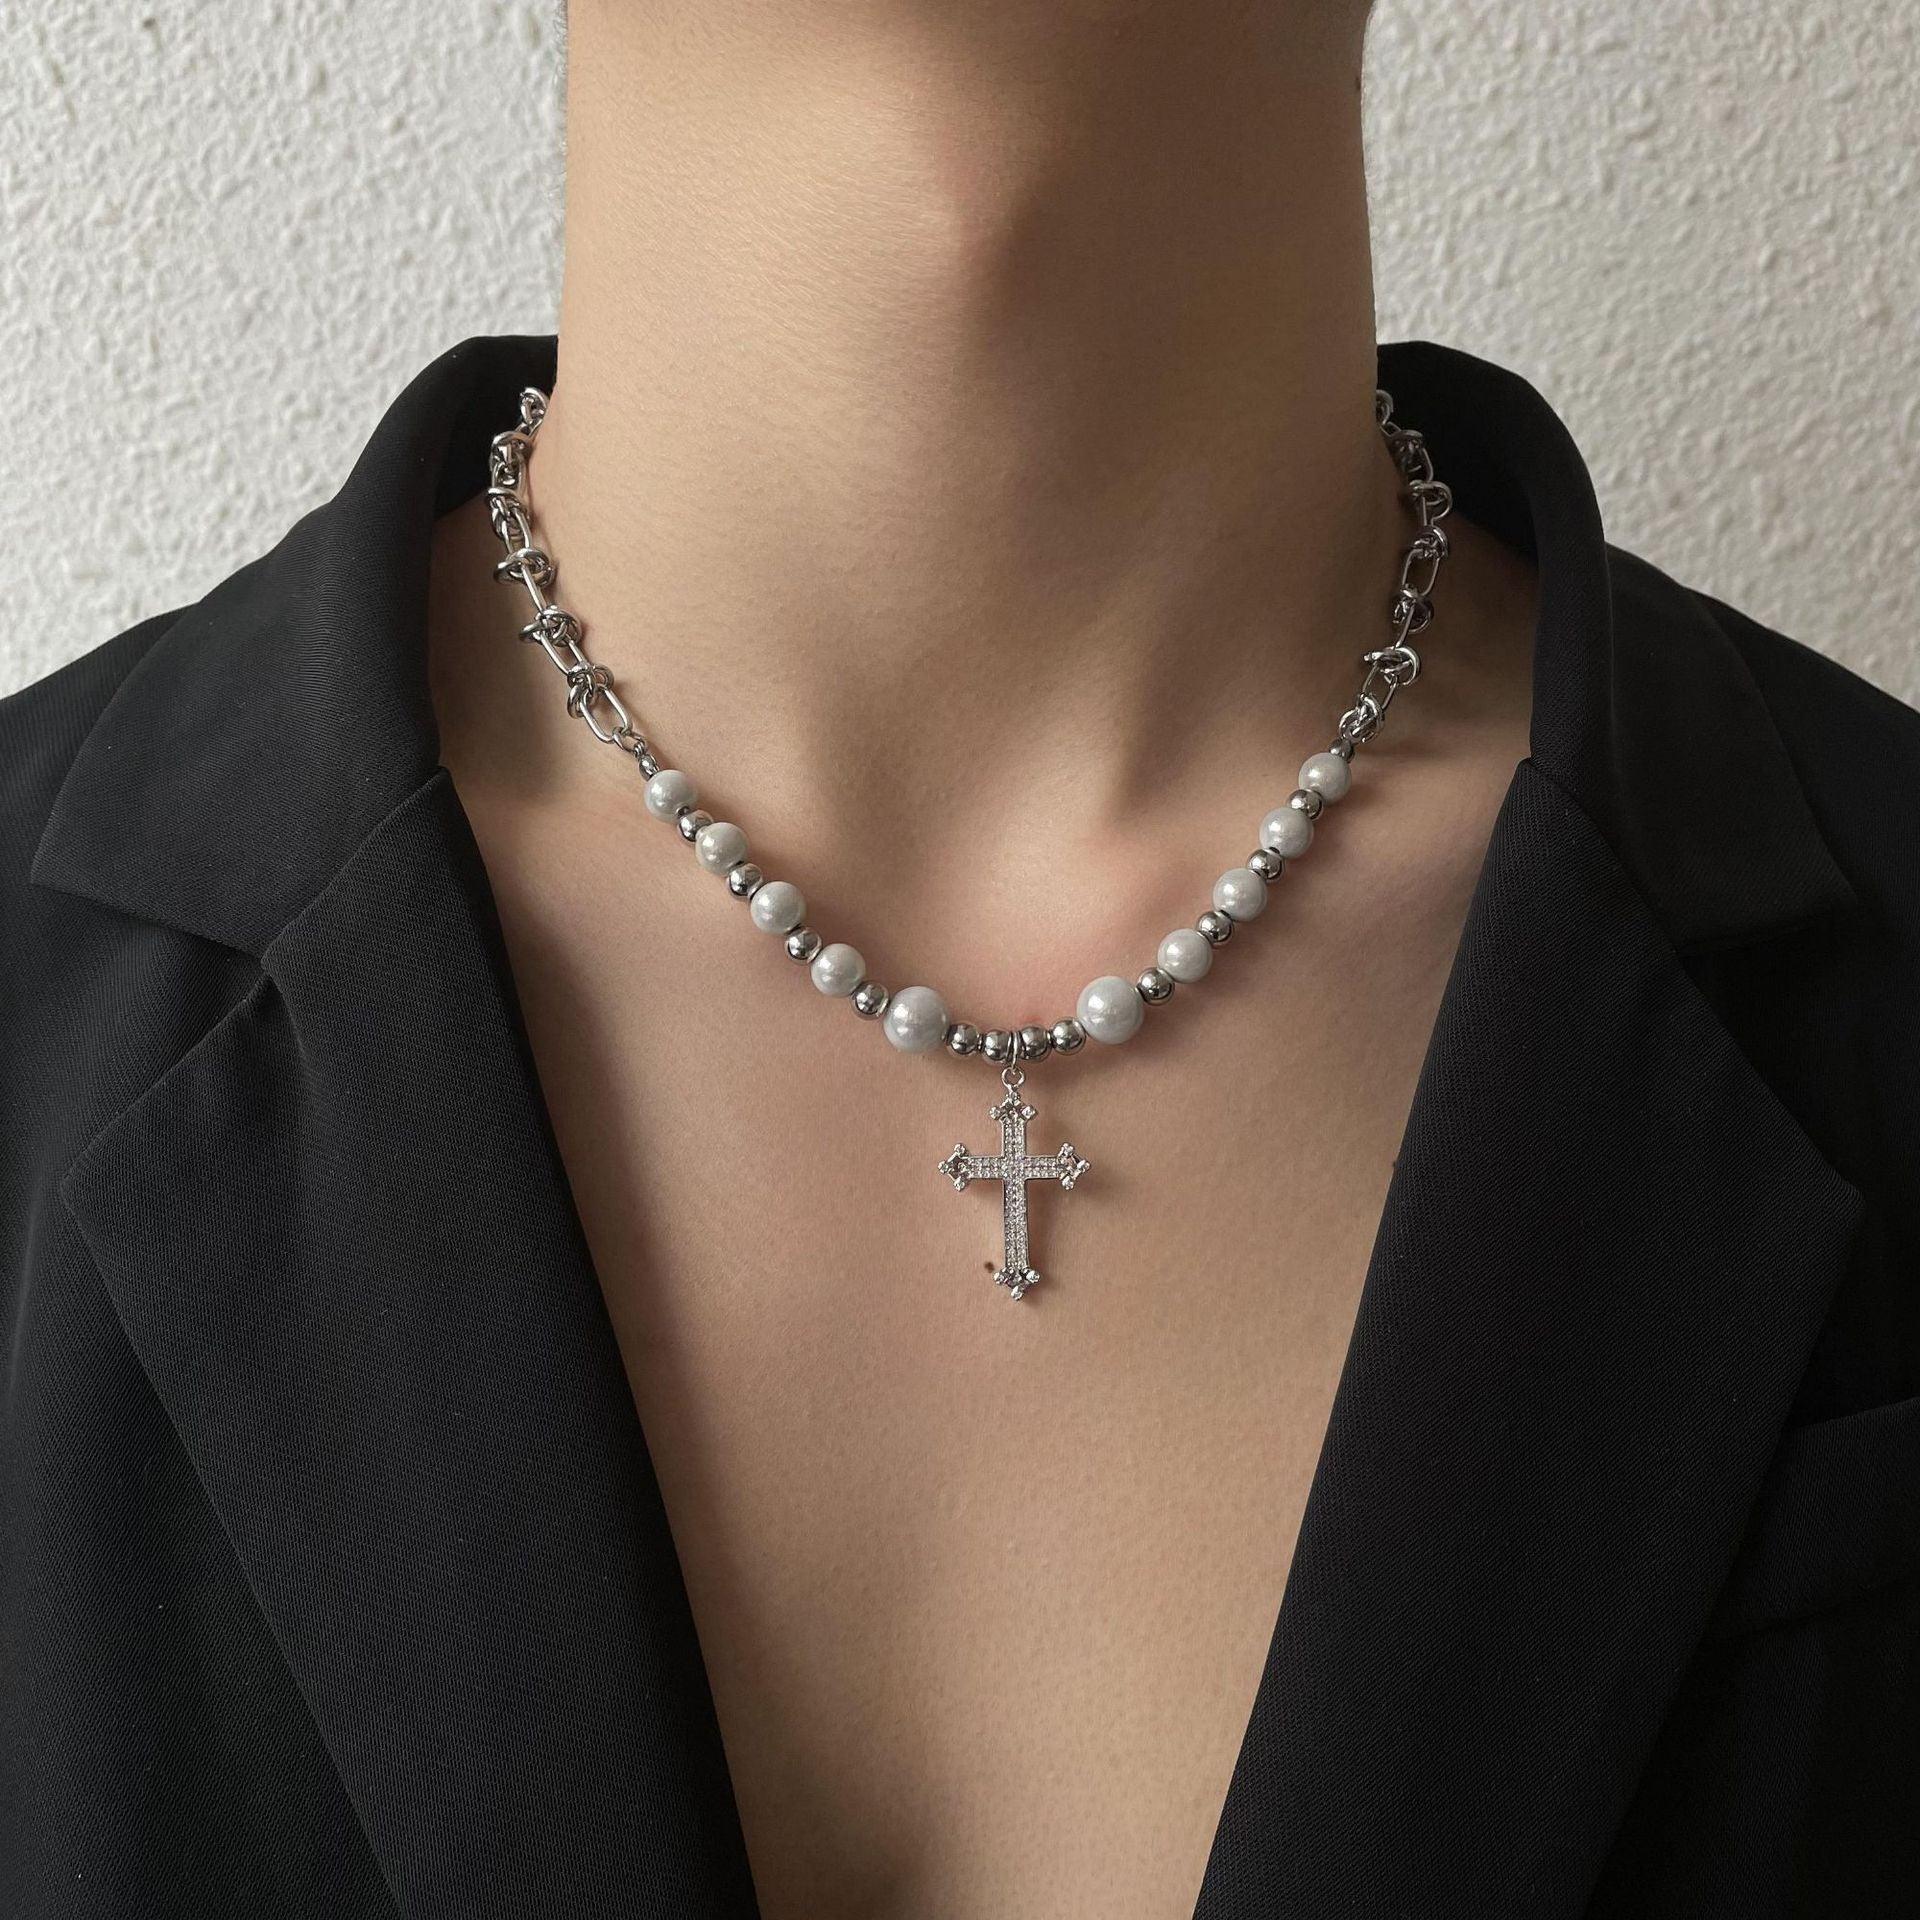 Reflective Pearl Cross Necklace - Keystreetwear